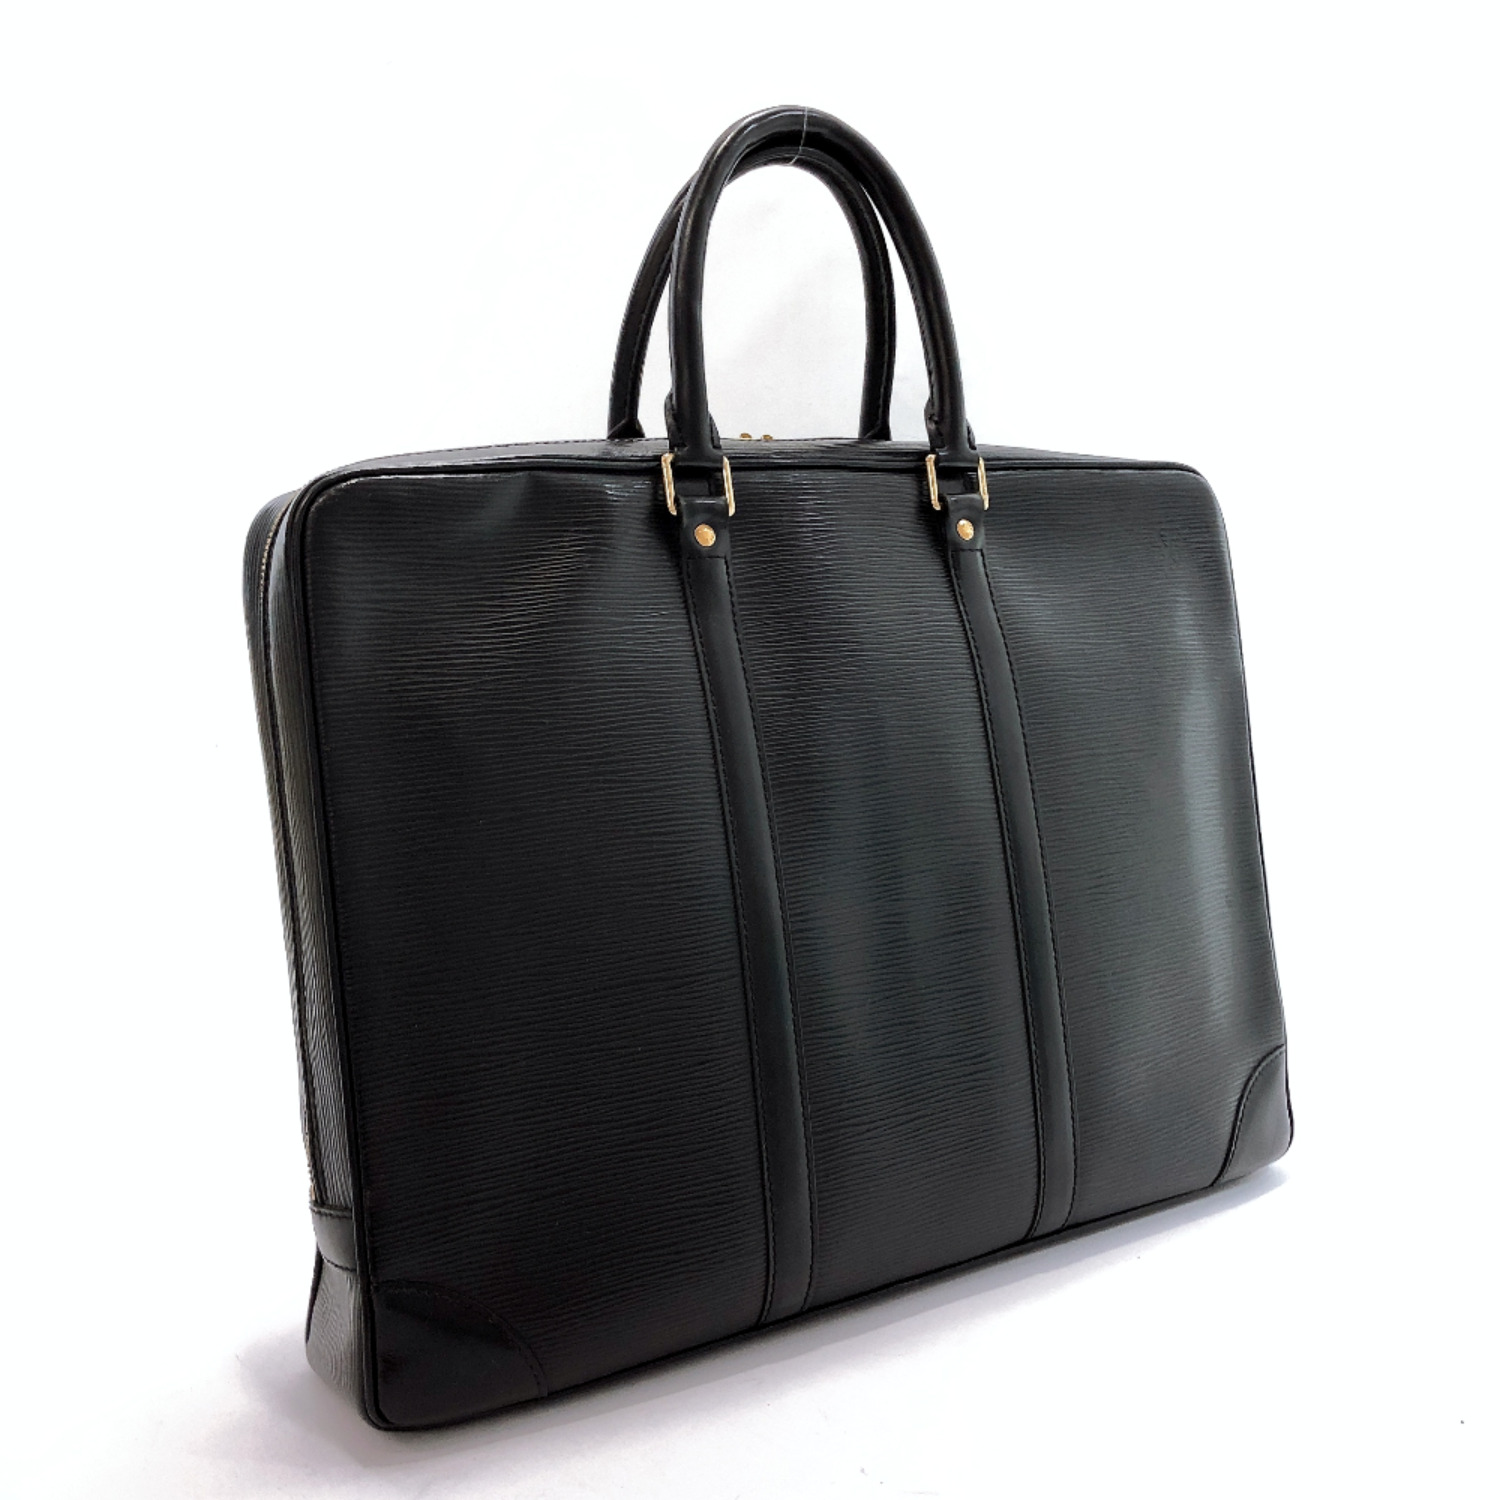 LOUIS VUITTON Business bag M59162 Porte de Cumman Voyage Epi Leather mens | eBay